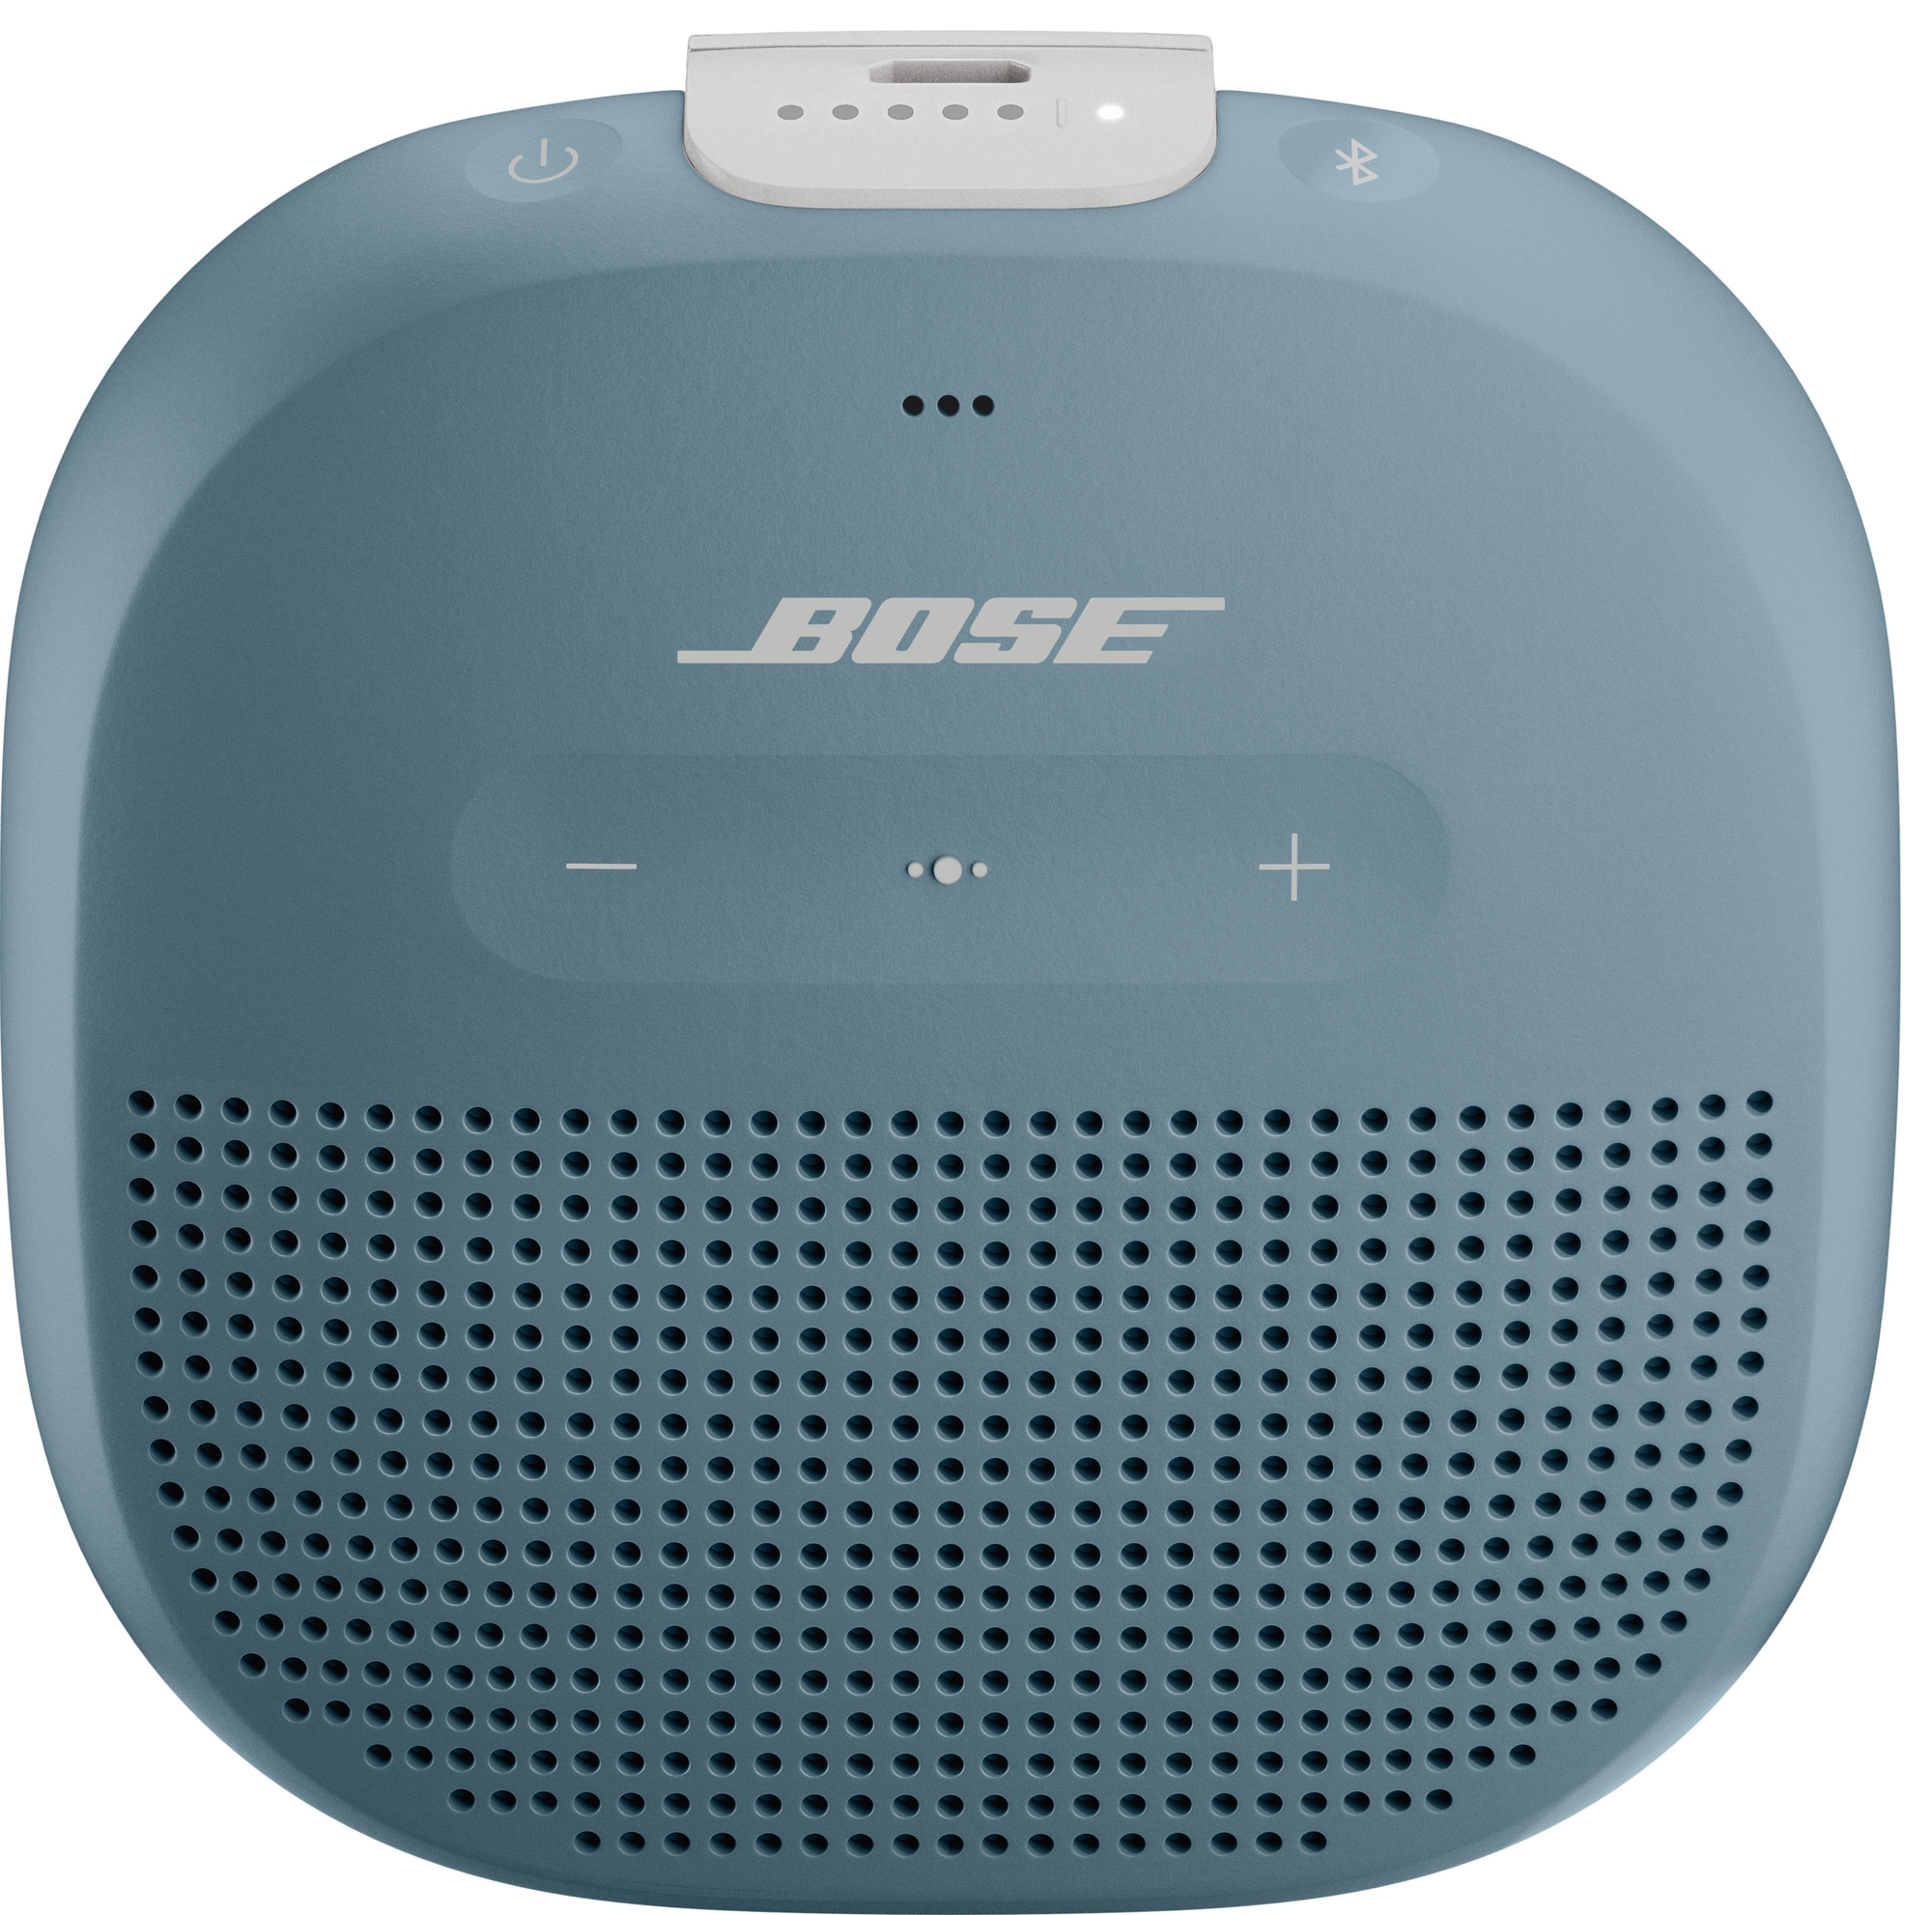 Bose SoundLink Micro trådløs højttaler (blå) | Elgiganten